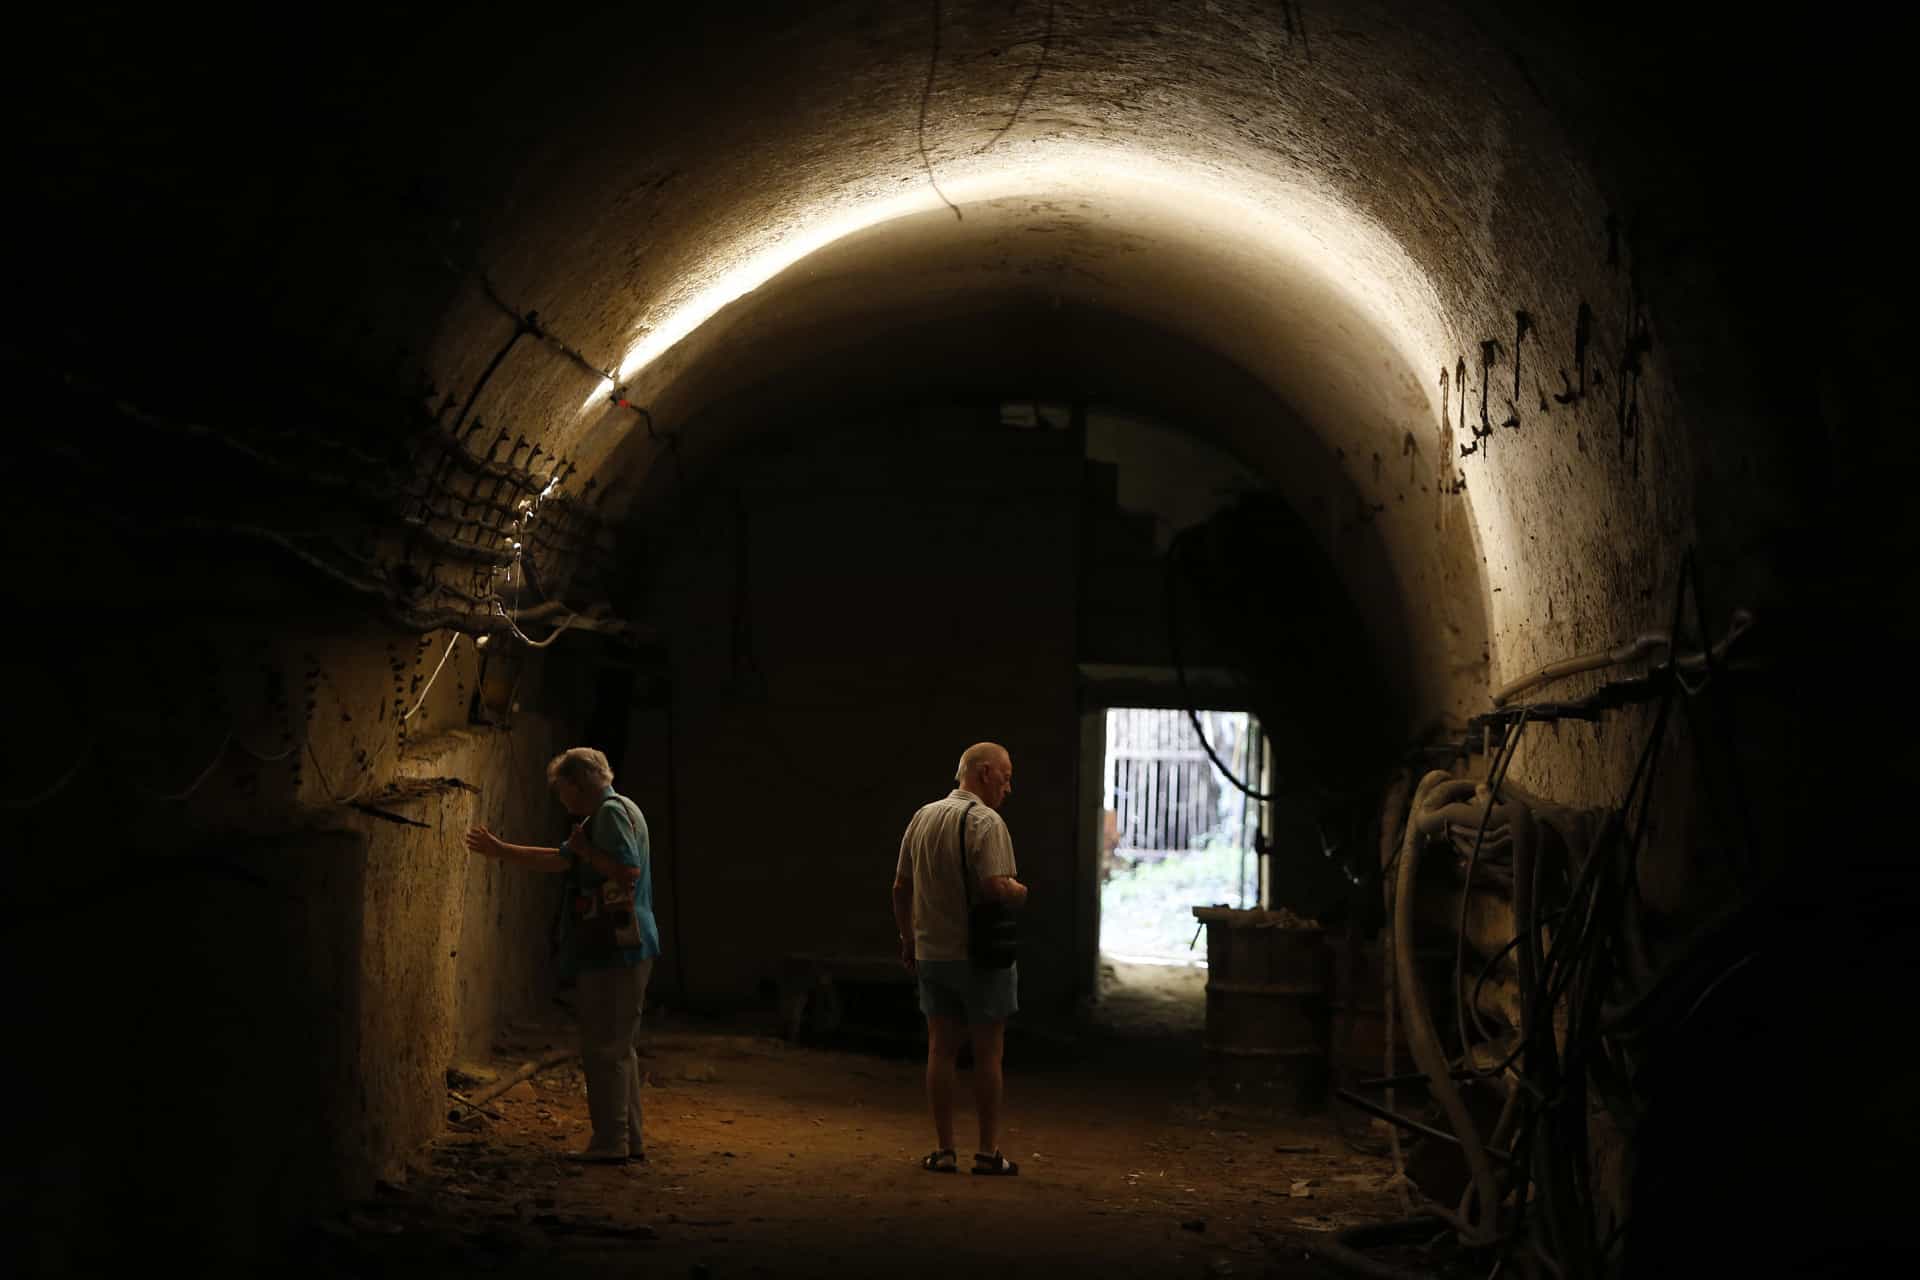 À La Vallette, les visiteurs peuvent traverser un tunnel appartenant anciennement à la société ferroviaire de Malte. La voie de chemin de fer a cessé son activité en 1931.